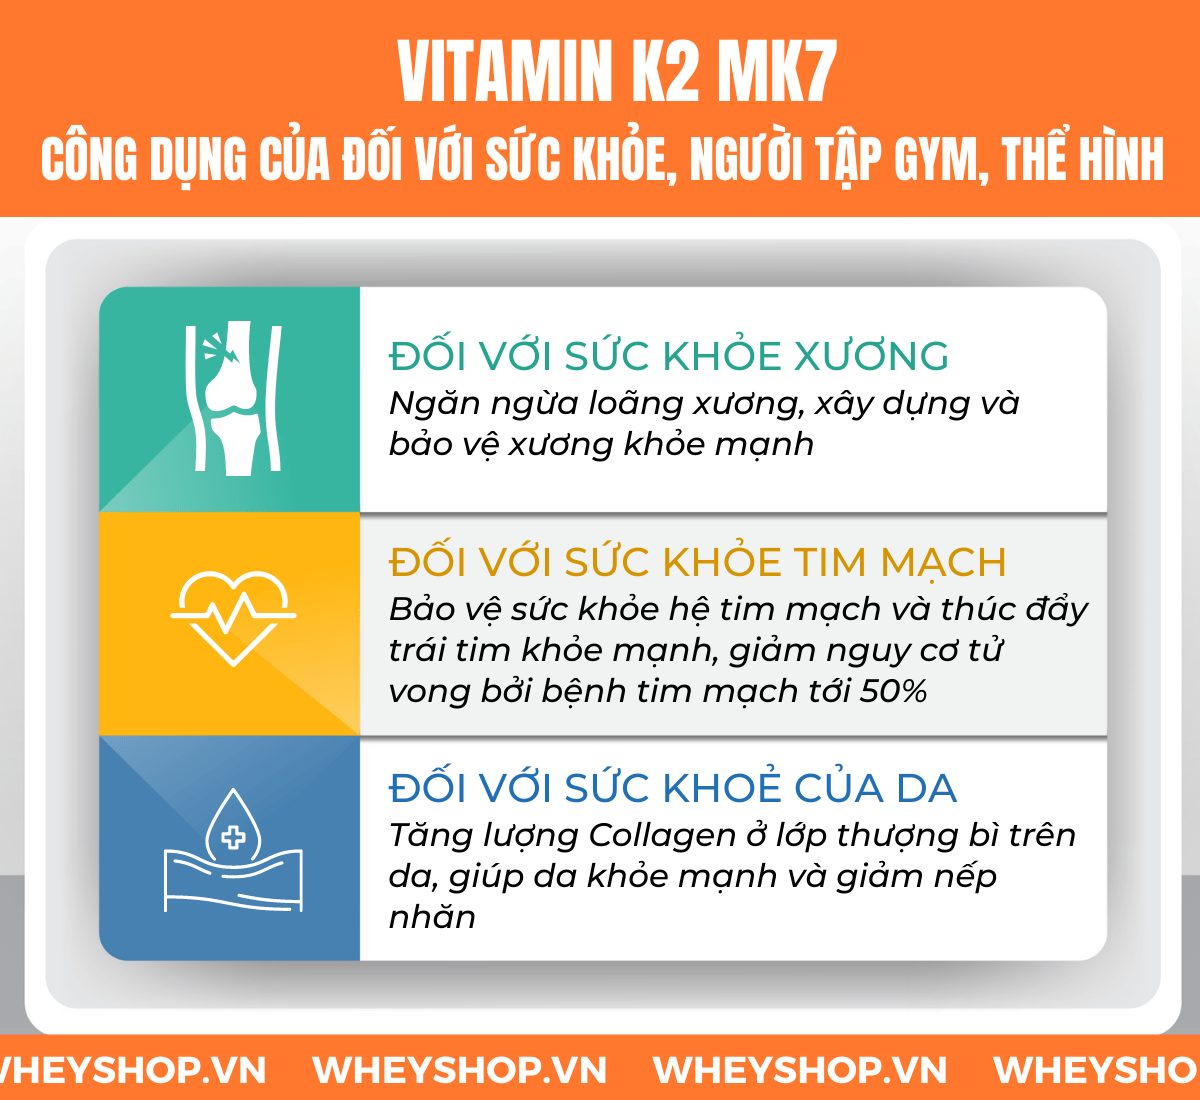 Tìm hiểu khái niệm Vitamin K2 Mk7 là gì, công dụng và lợi ích của Vitamin K2 Mk7 đối với sức khỏe và vai trò với người tập gym, tập thể hình